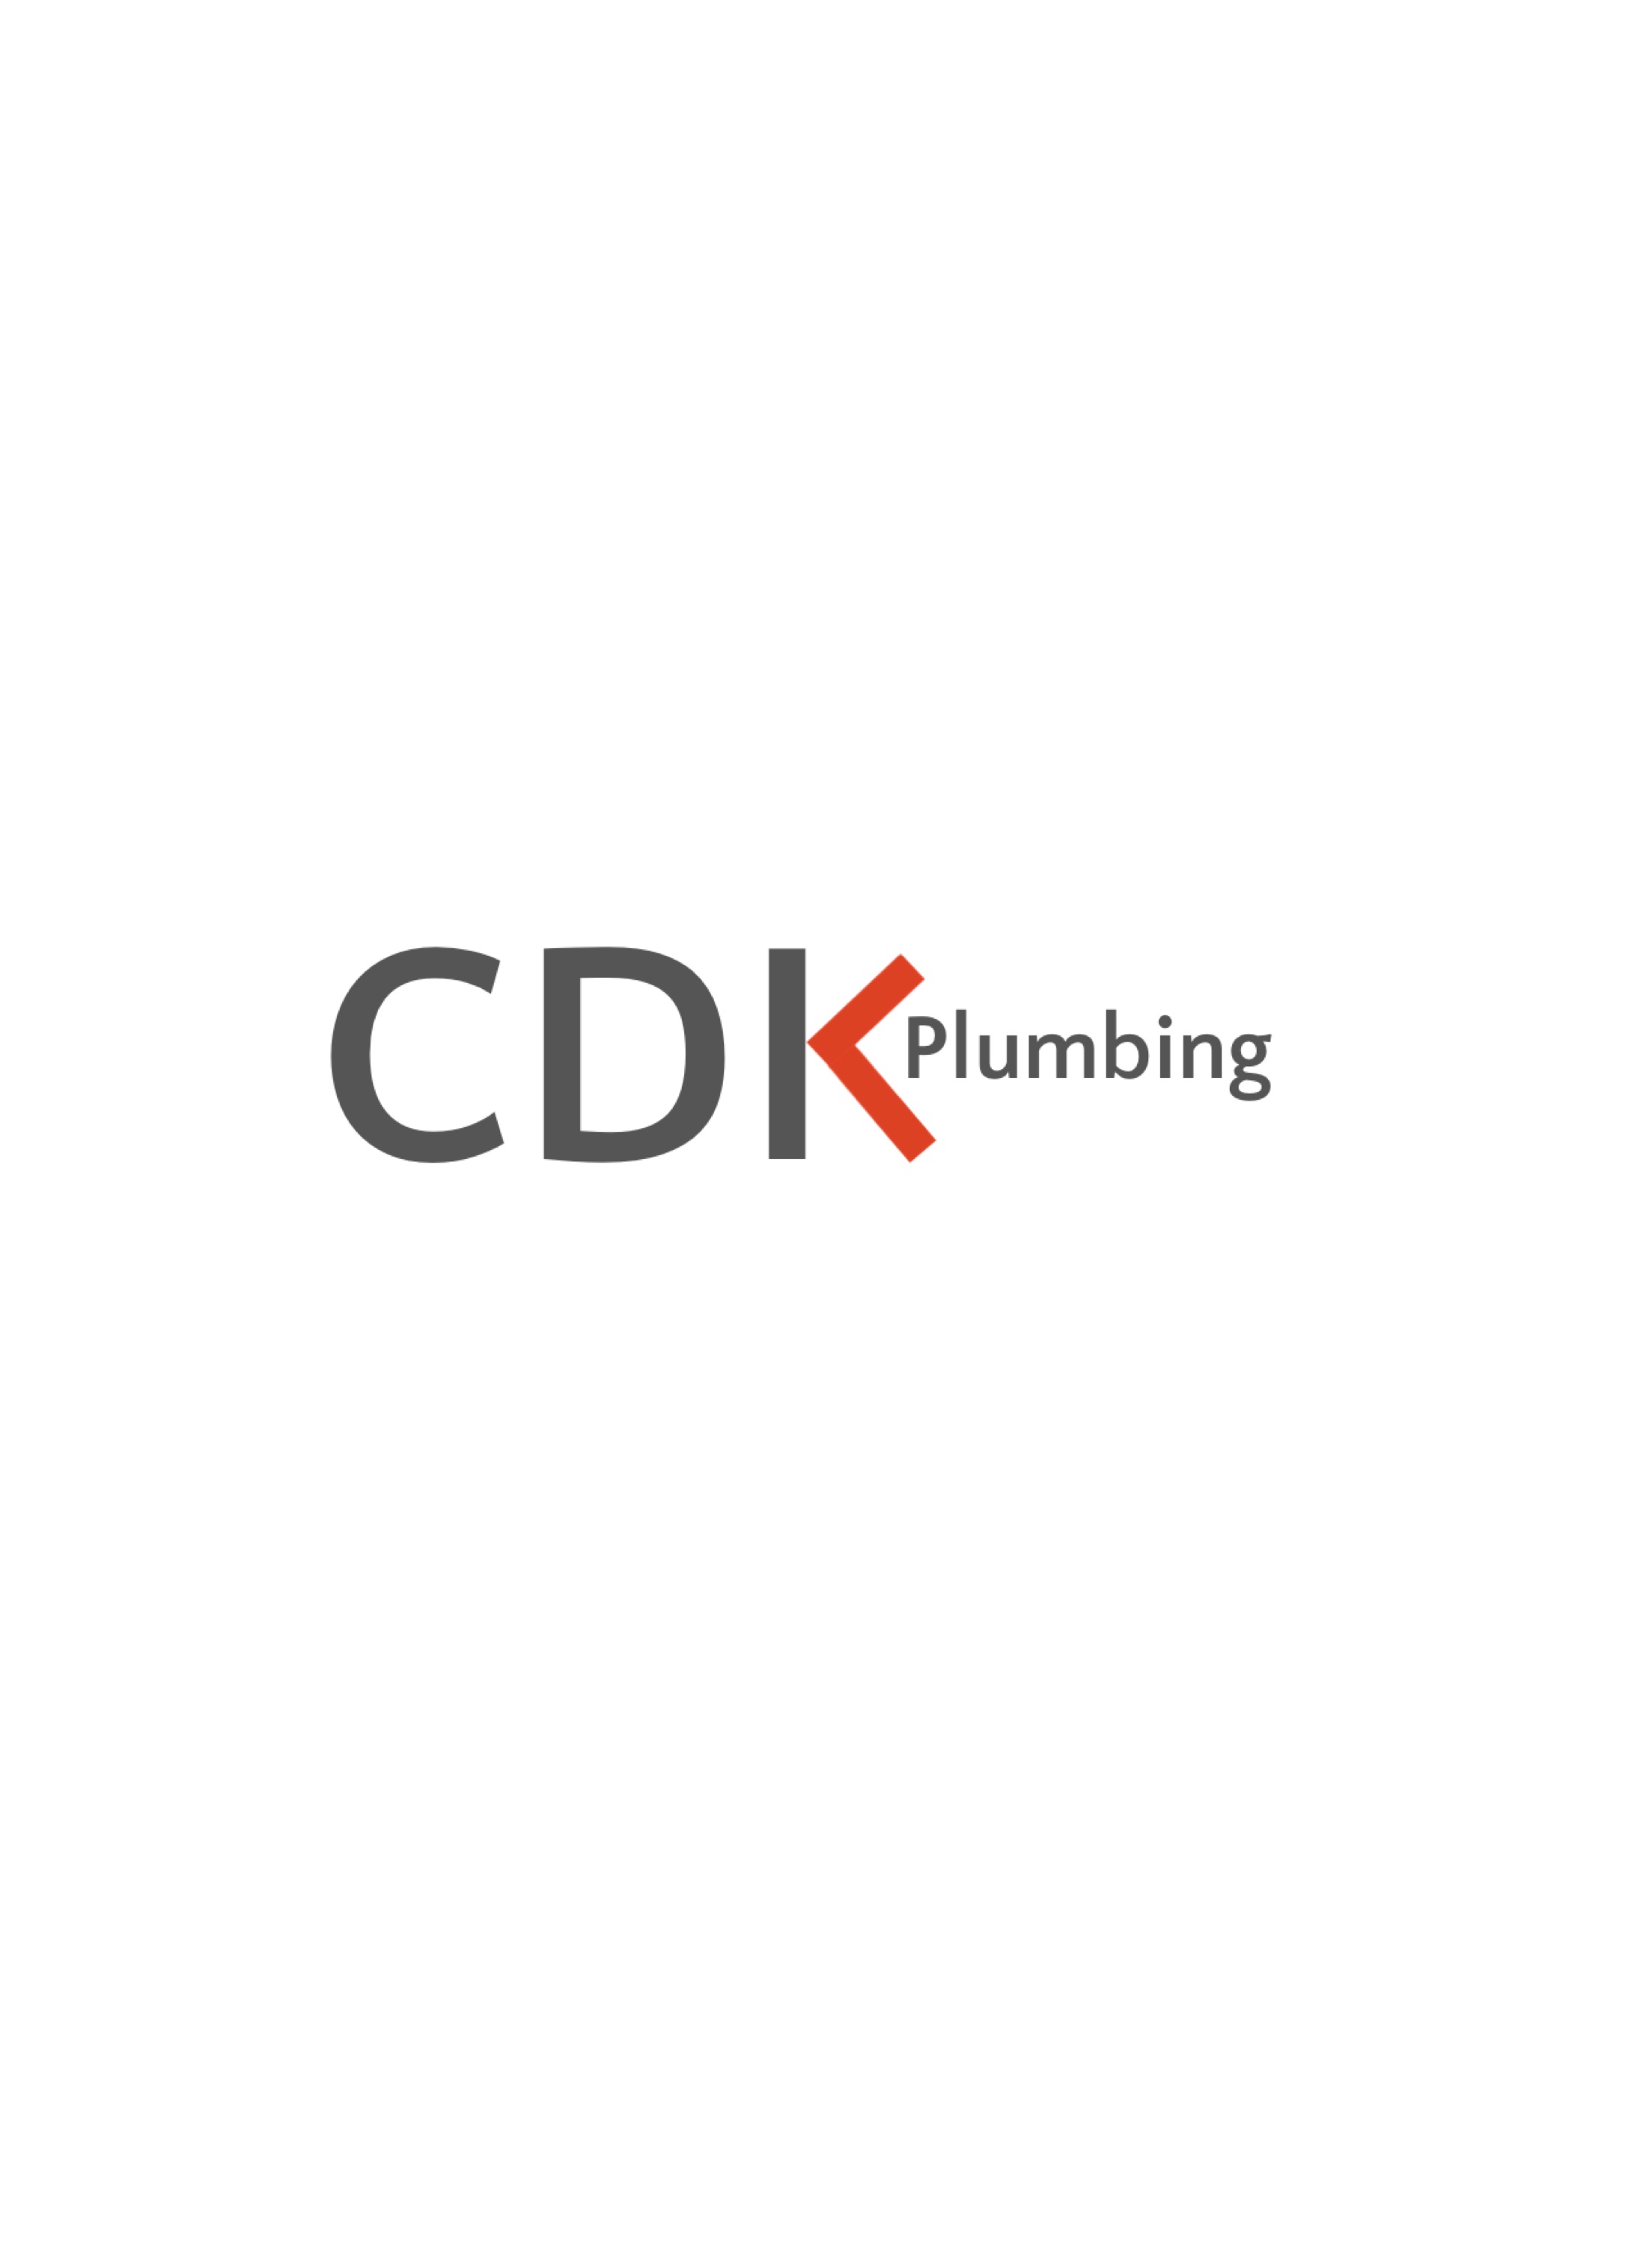 CDK Plumbing Logo